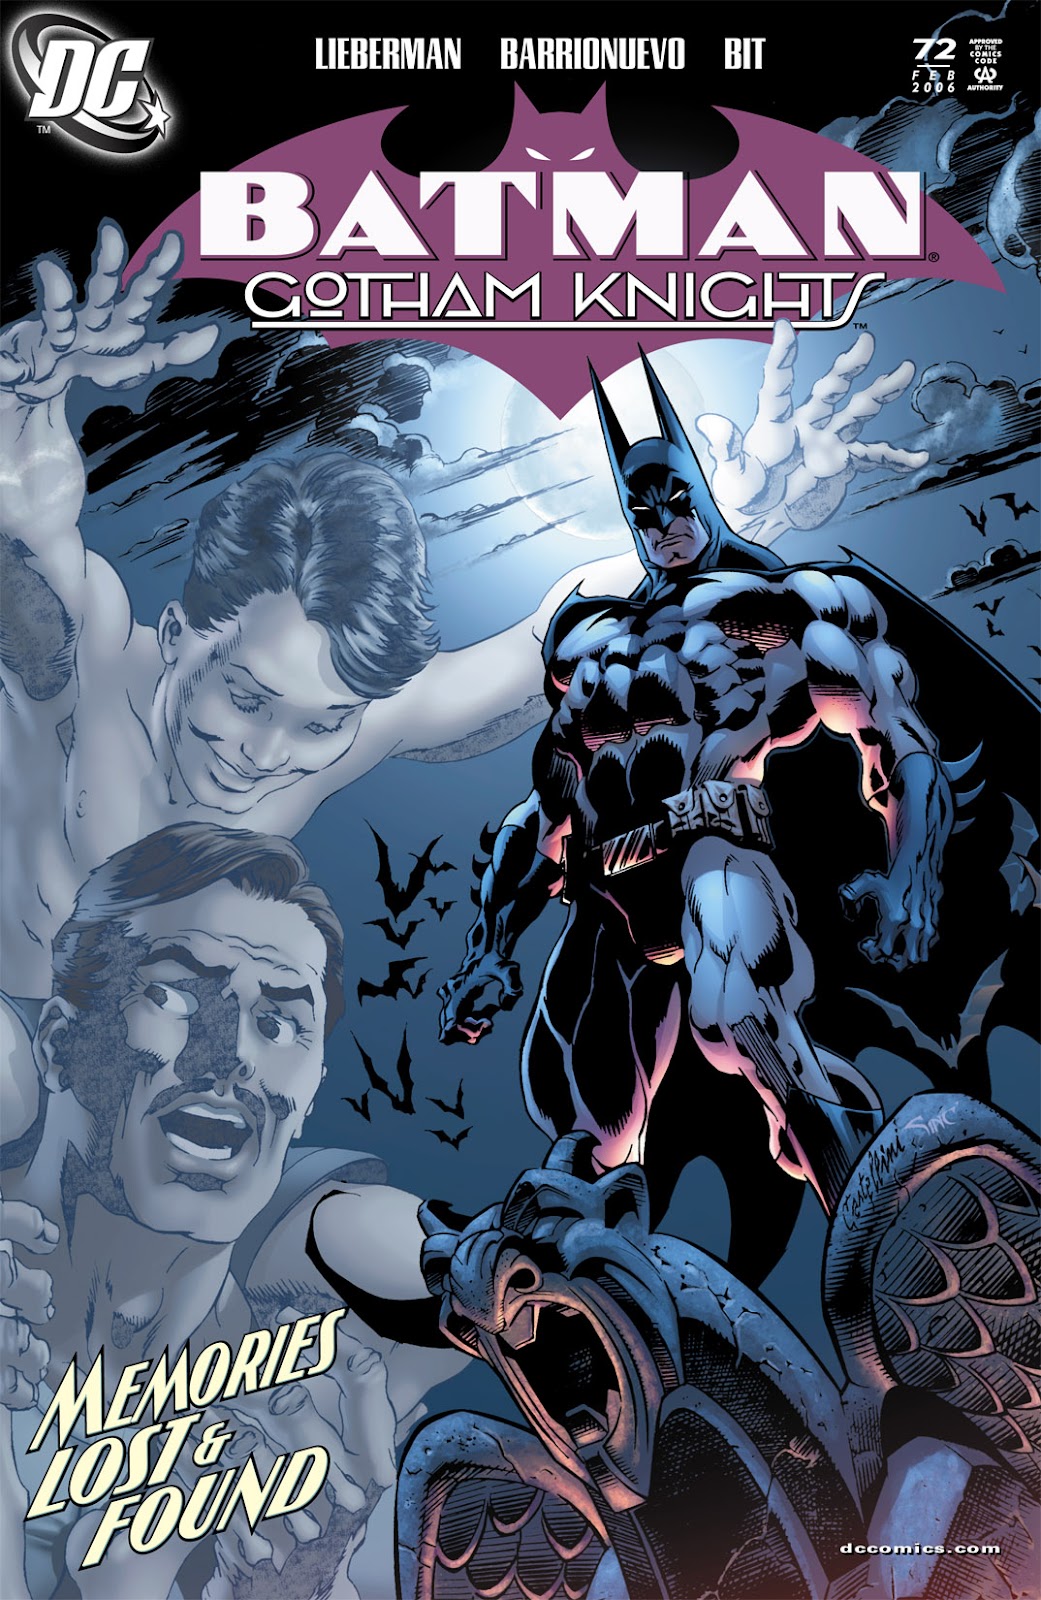 Batman: Gotham Knights issue 72 - Page 1